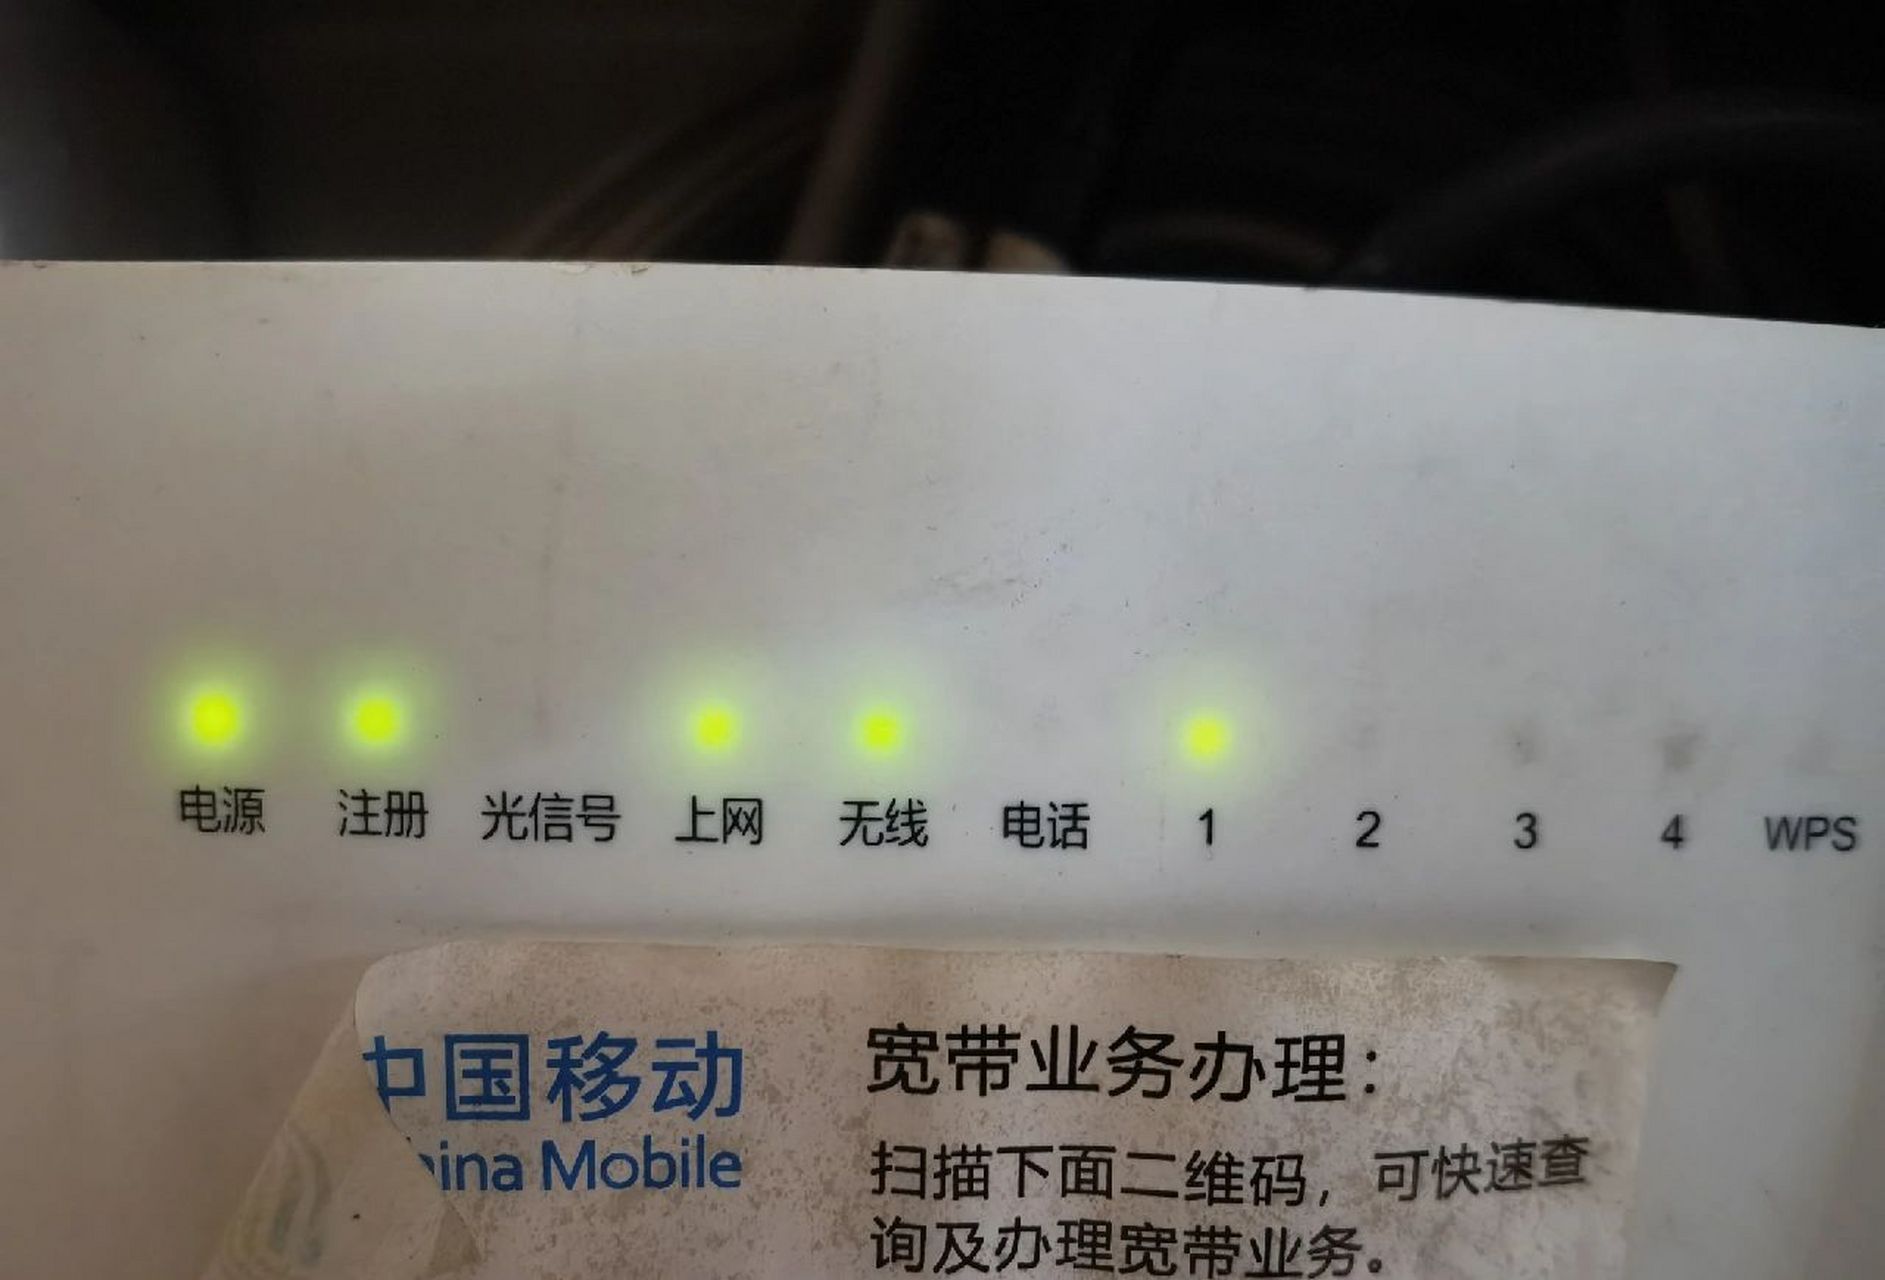 中国移动光猫指示灯图片